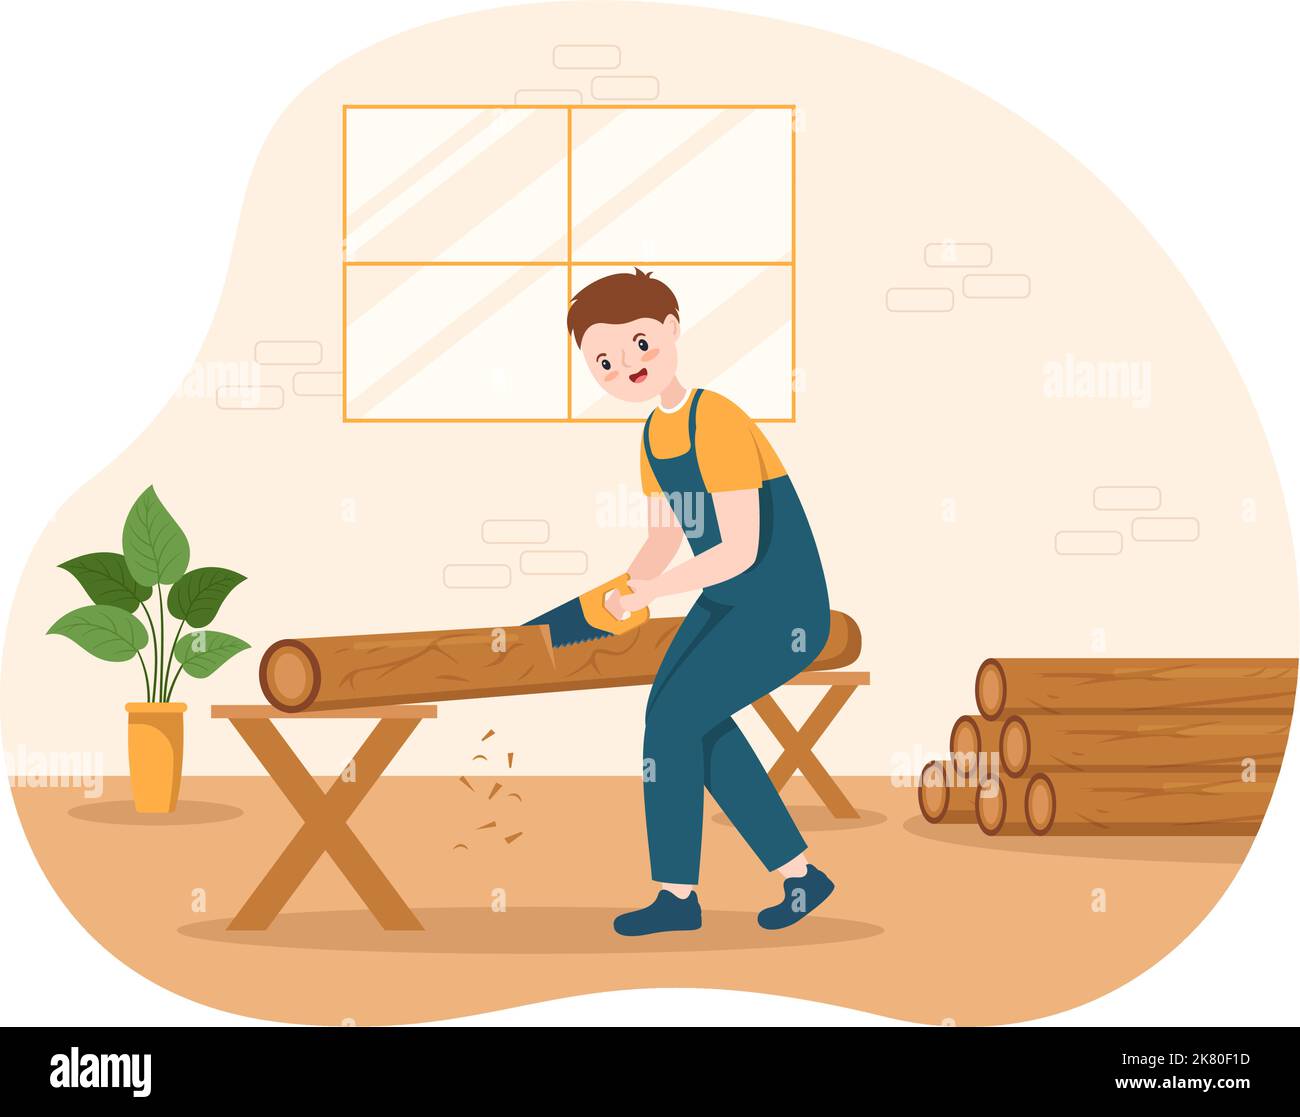 Menschen Baumschnitt und Holz mit LKW, Kettensäge Holz und Werkzeuge Protokollierung im Wald auf flachen Cartoon Handgezeichnete Vorlagen Illustration Stock Vektor